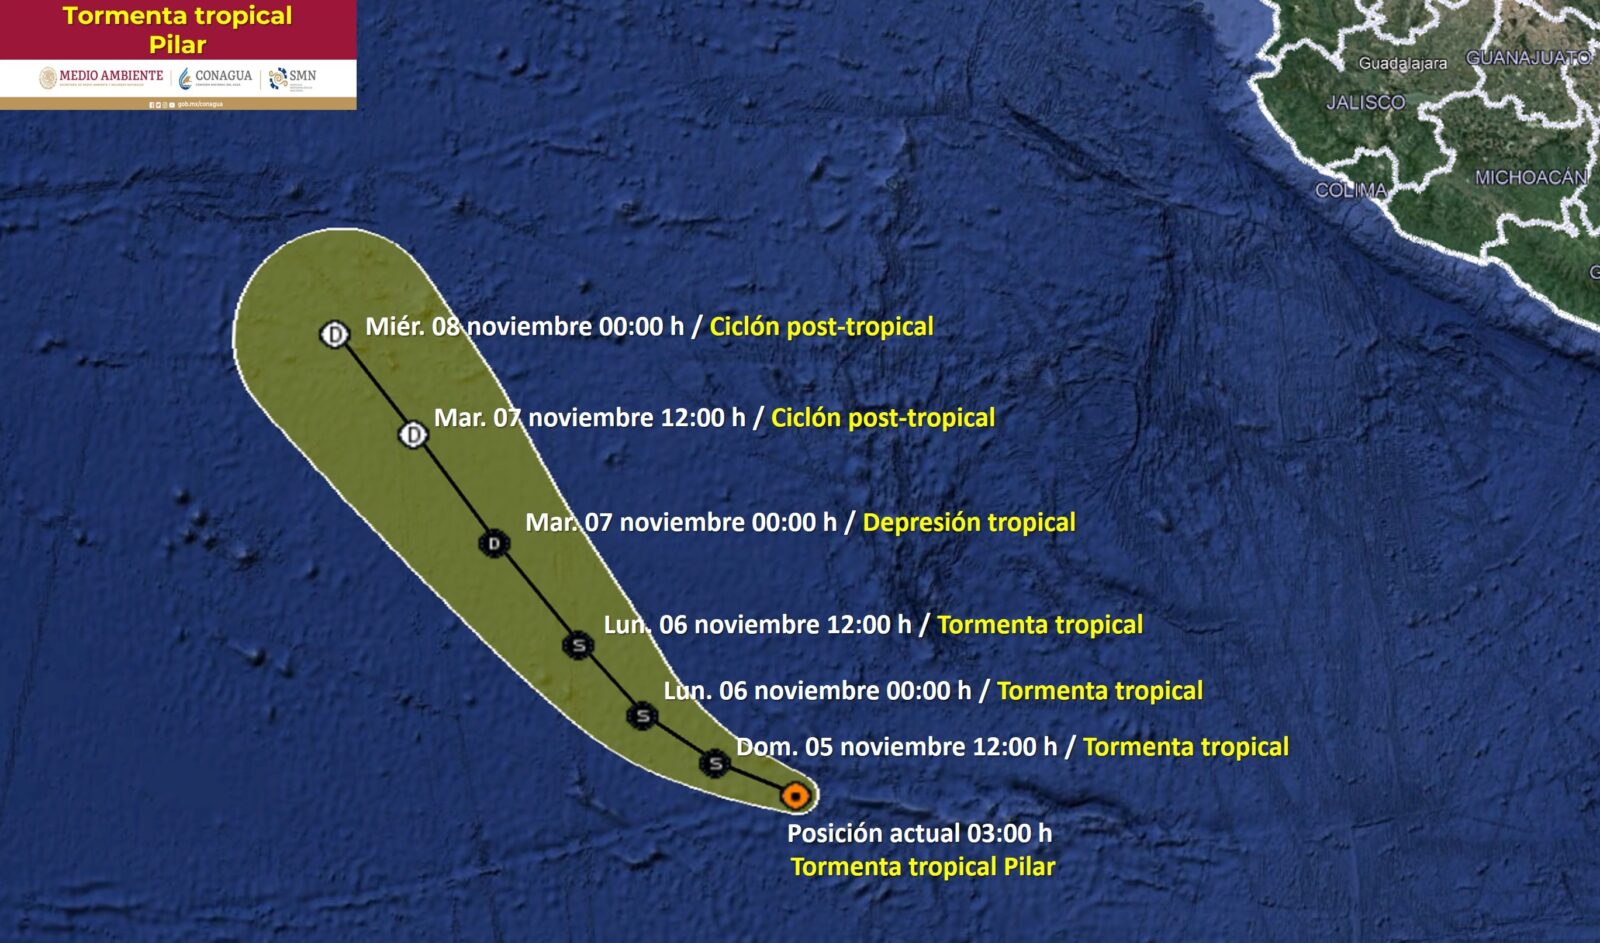 La tormenta tropical 'Pilar' mantiene su desplazamiento hacia el Oeste